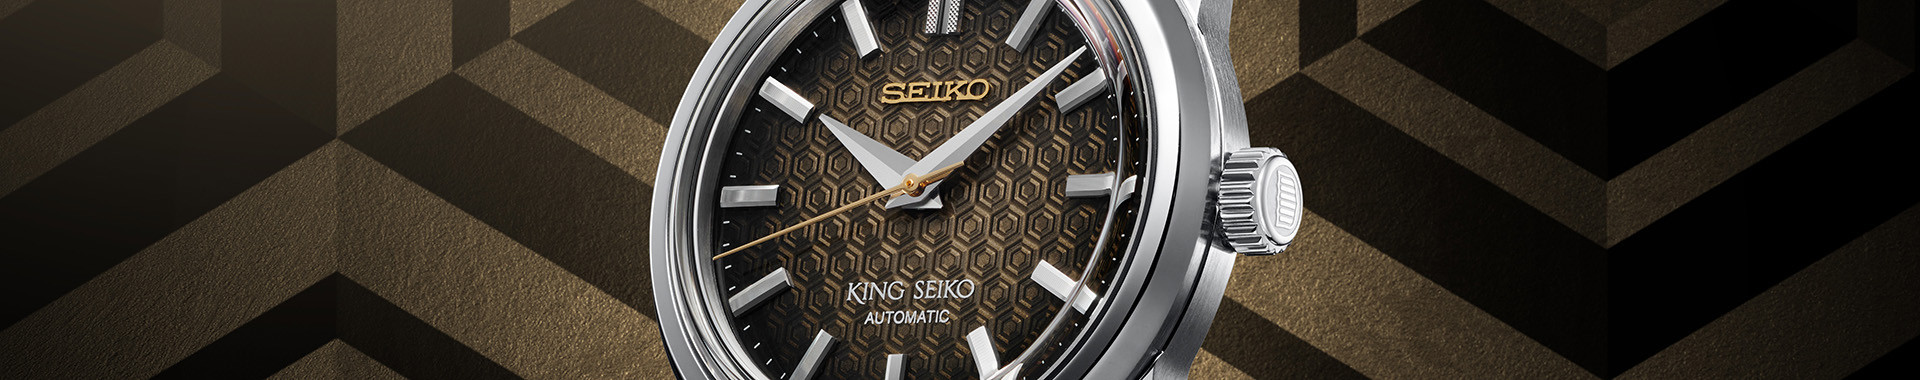 King Seiko Men's Collection - Seiko Boutique